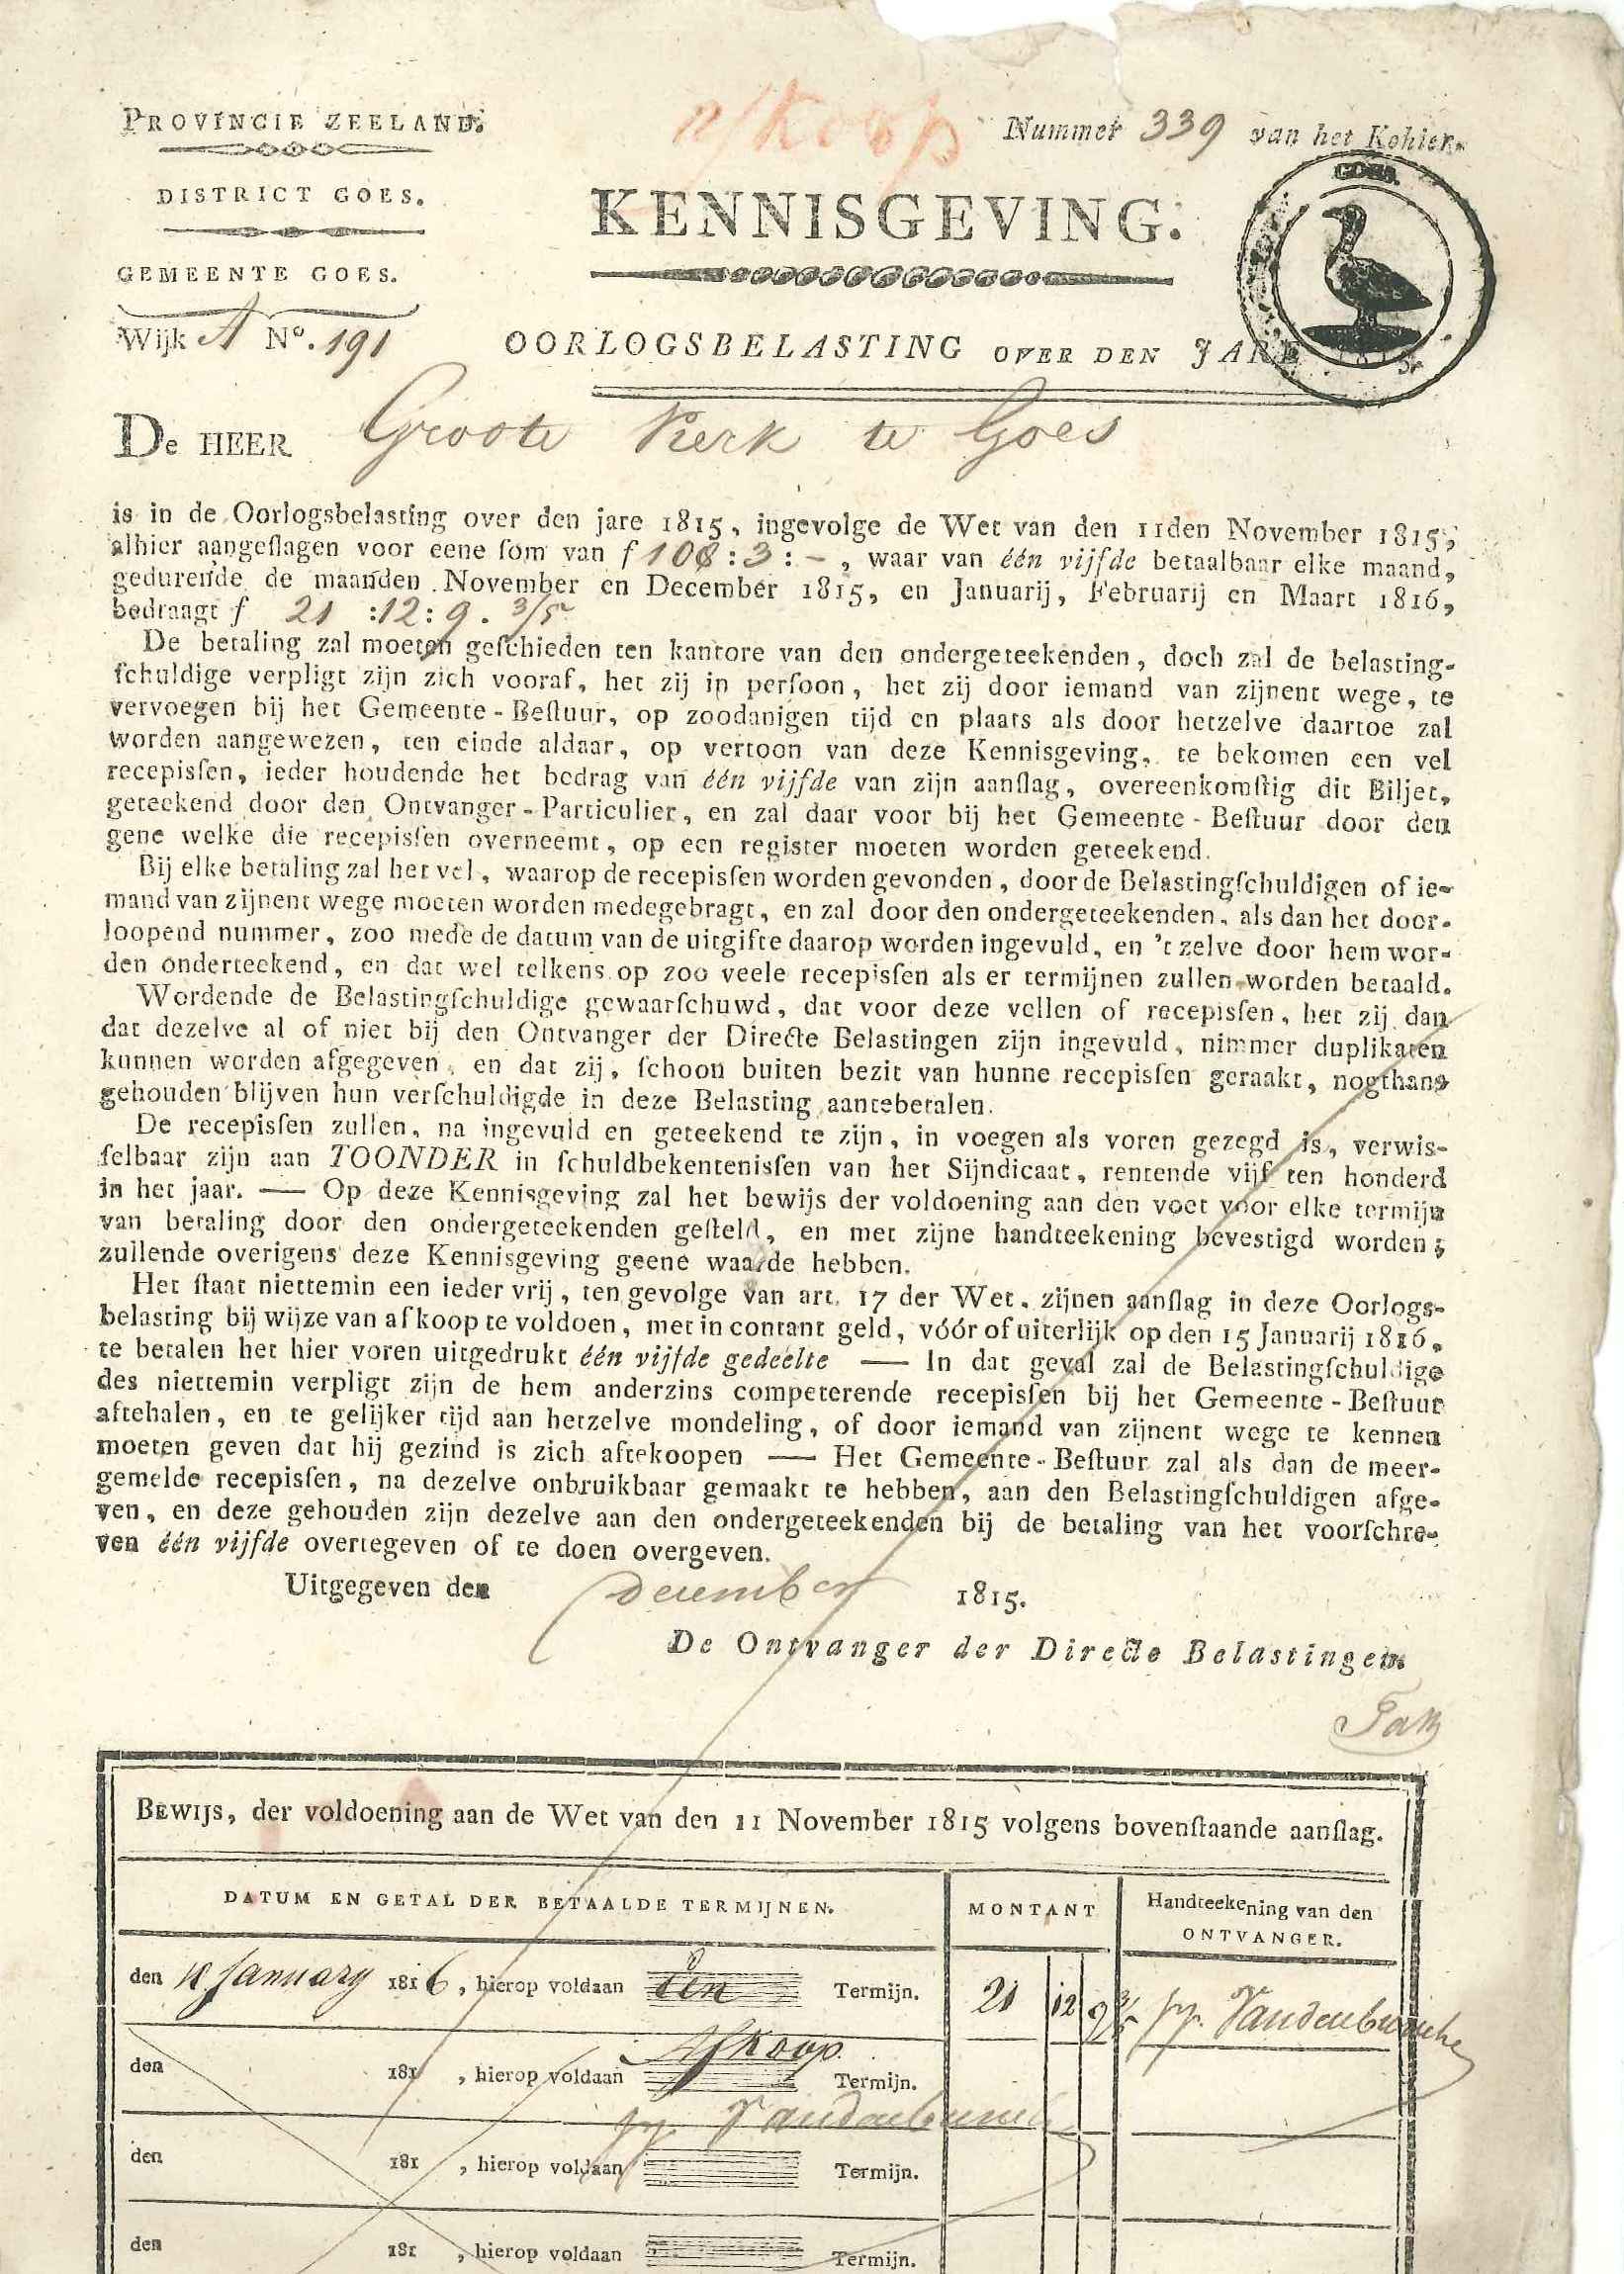 Aanslagbiljet voor de oorlogsbelasting voor de hervormde kerk, 1815.